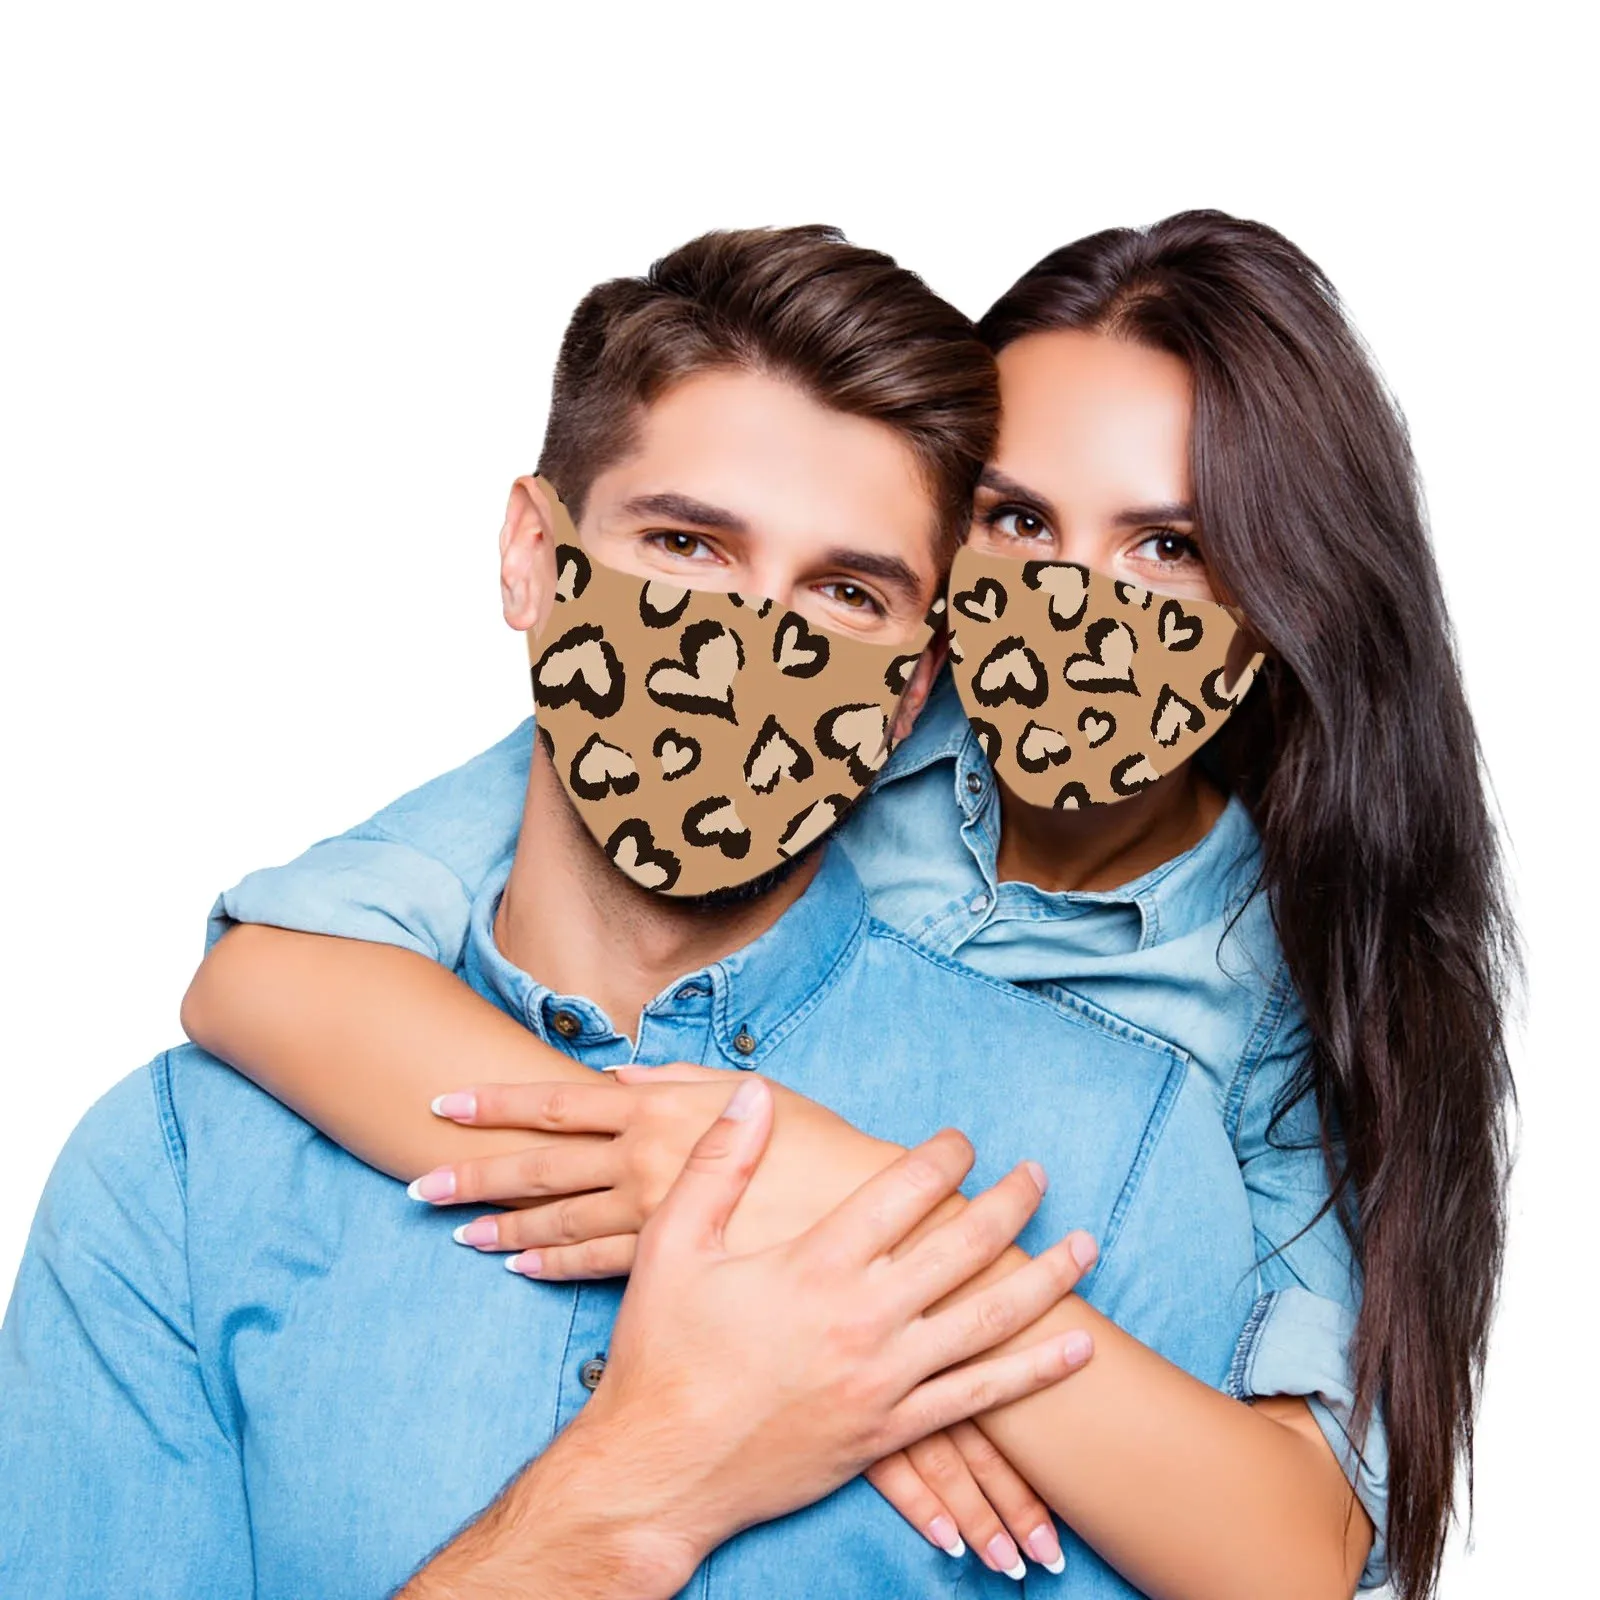 

Маска для лица для взрослых на Хэллоуин, защитное покрытие с красивым леопардовым принтом, из вискозы, для защиты от пыли и смога, 1 шт.